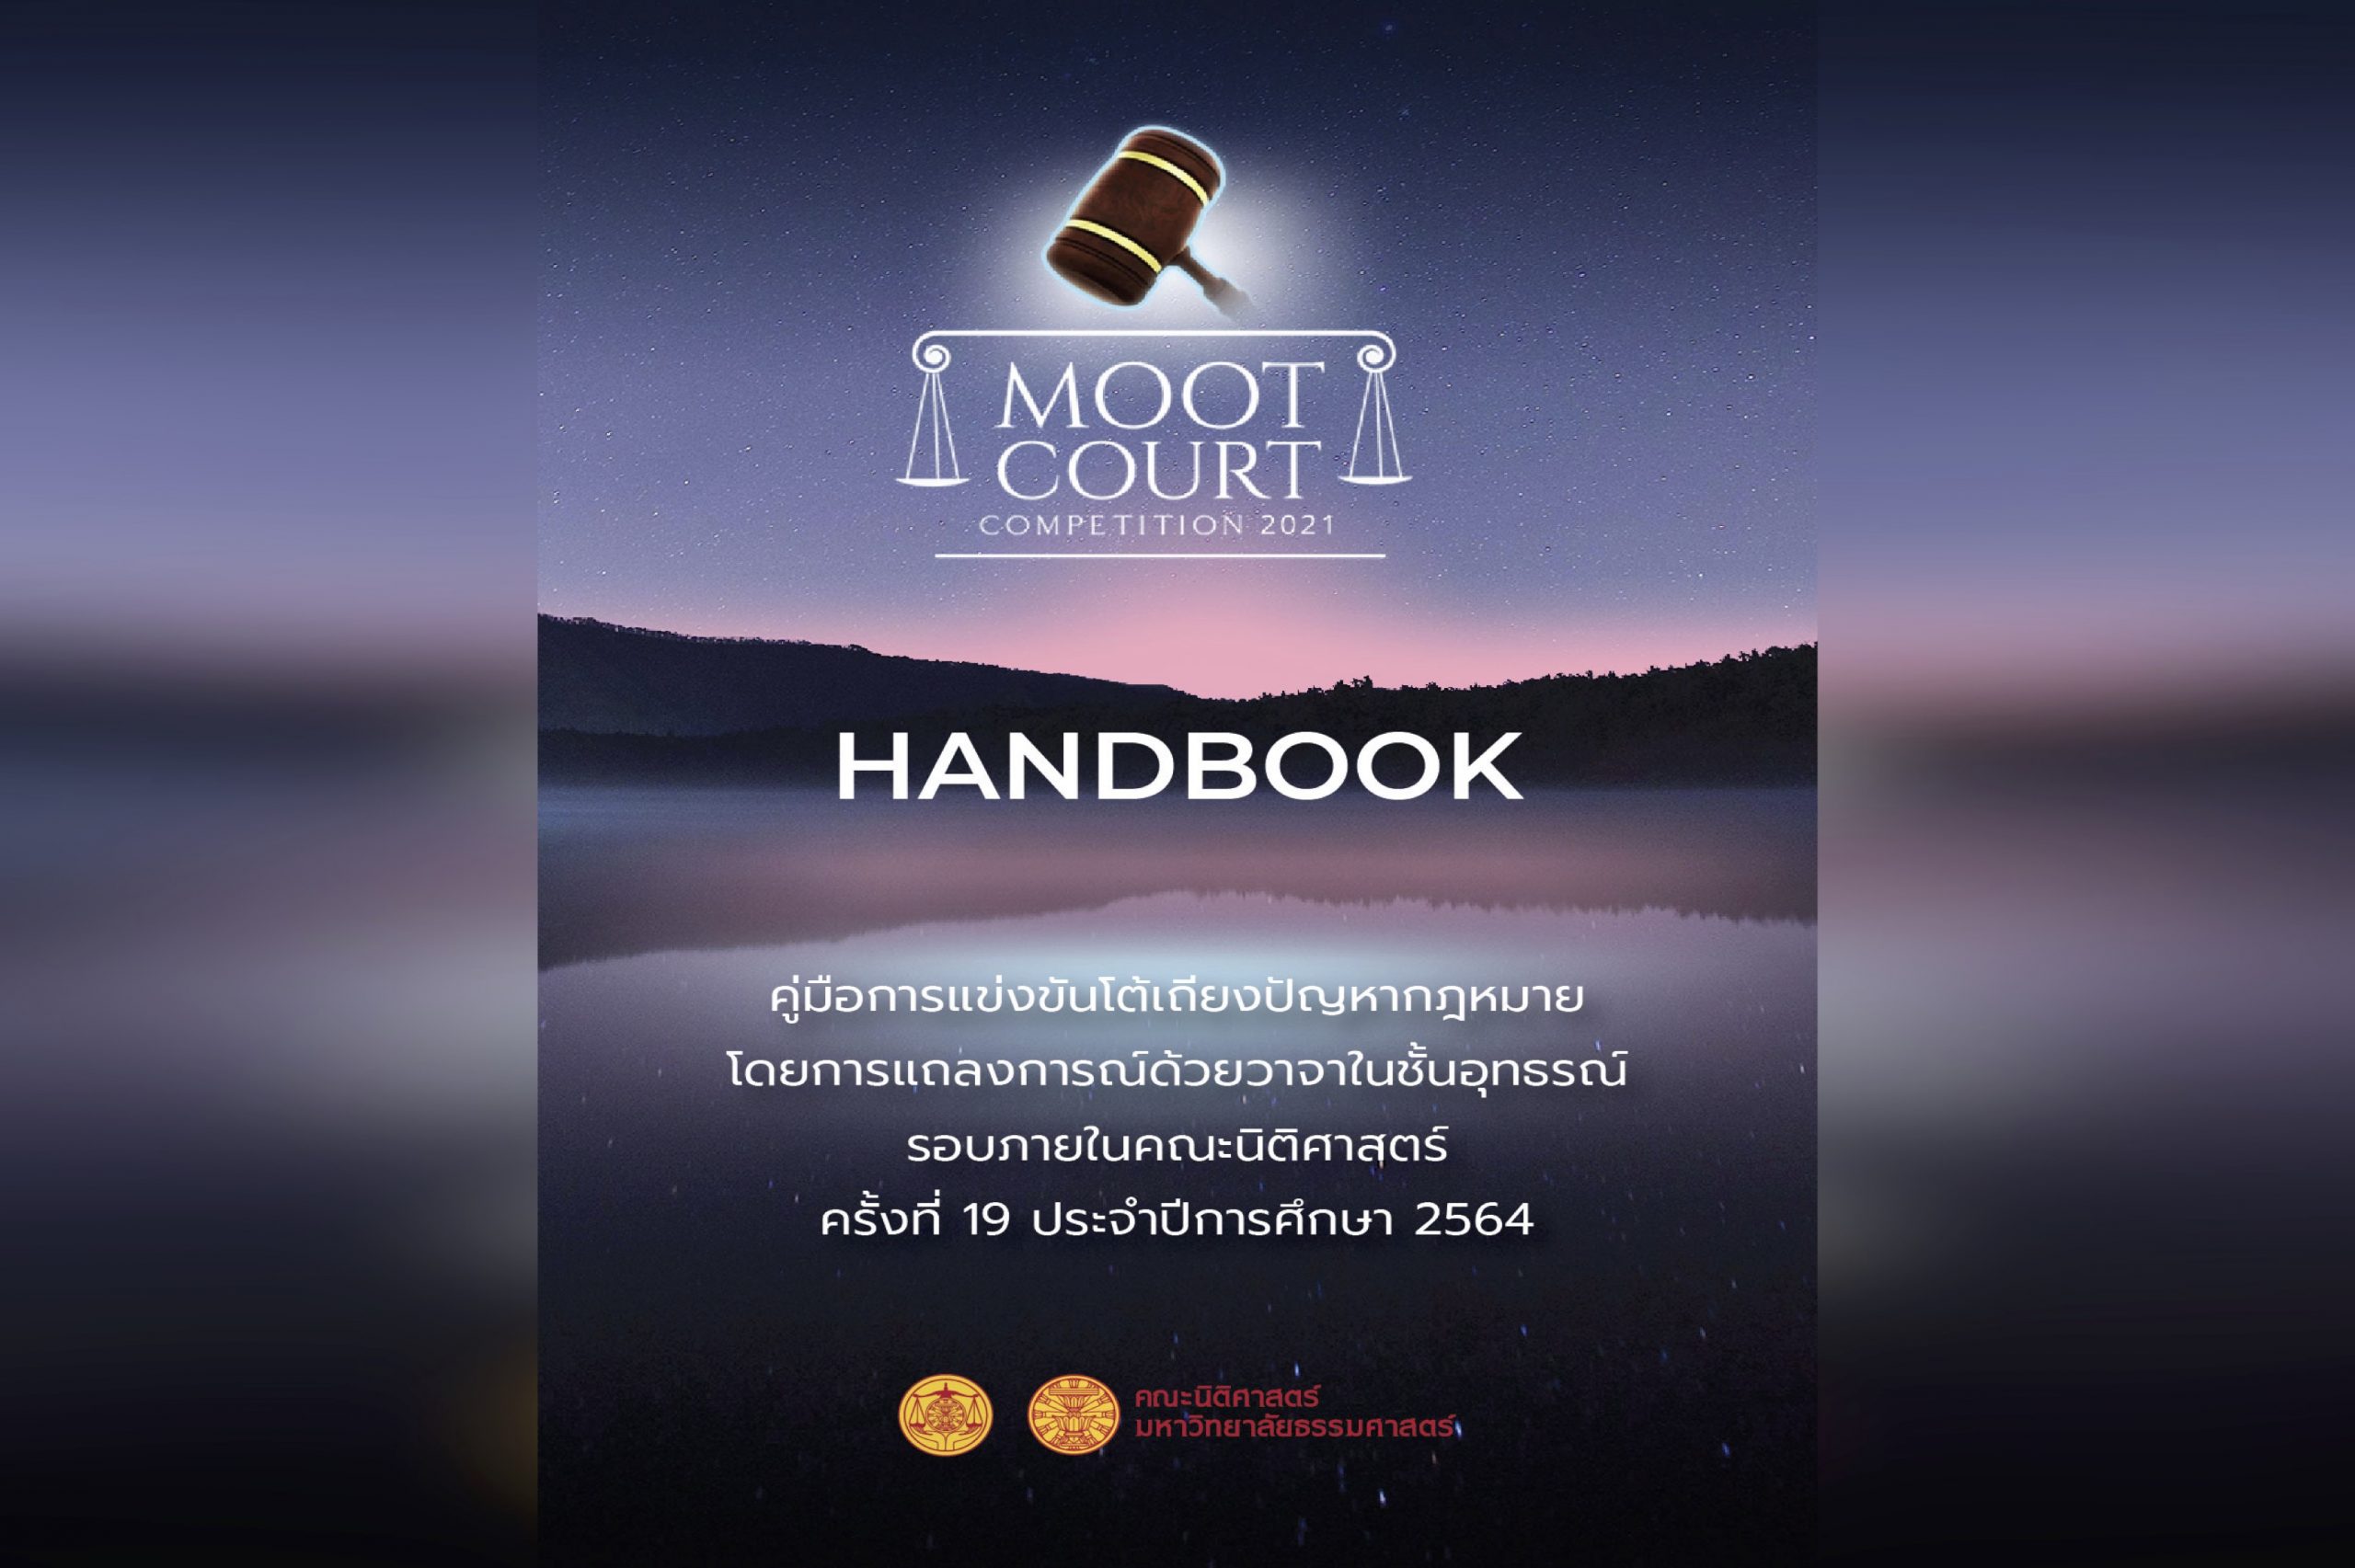 คู่มือการแข่งขันโต้เถียงปัญหากฎหมายโดยการแถลงการณ์ด้วยวาจาในชั้นอุทธรณ์ รอบภายในคณะนิติศาสตร์ ครั้งที่ 19 ประจำปีการศึกษา 2564 (Moot Court Competition 2021)